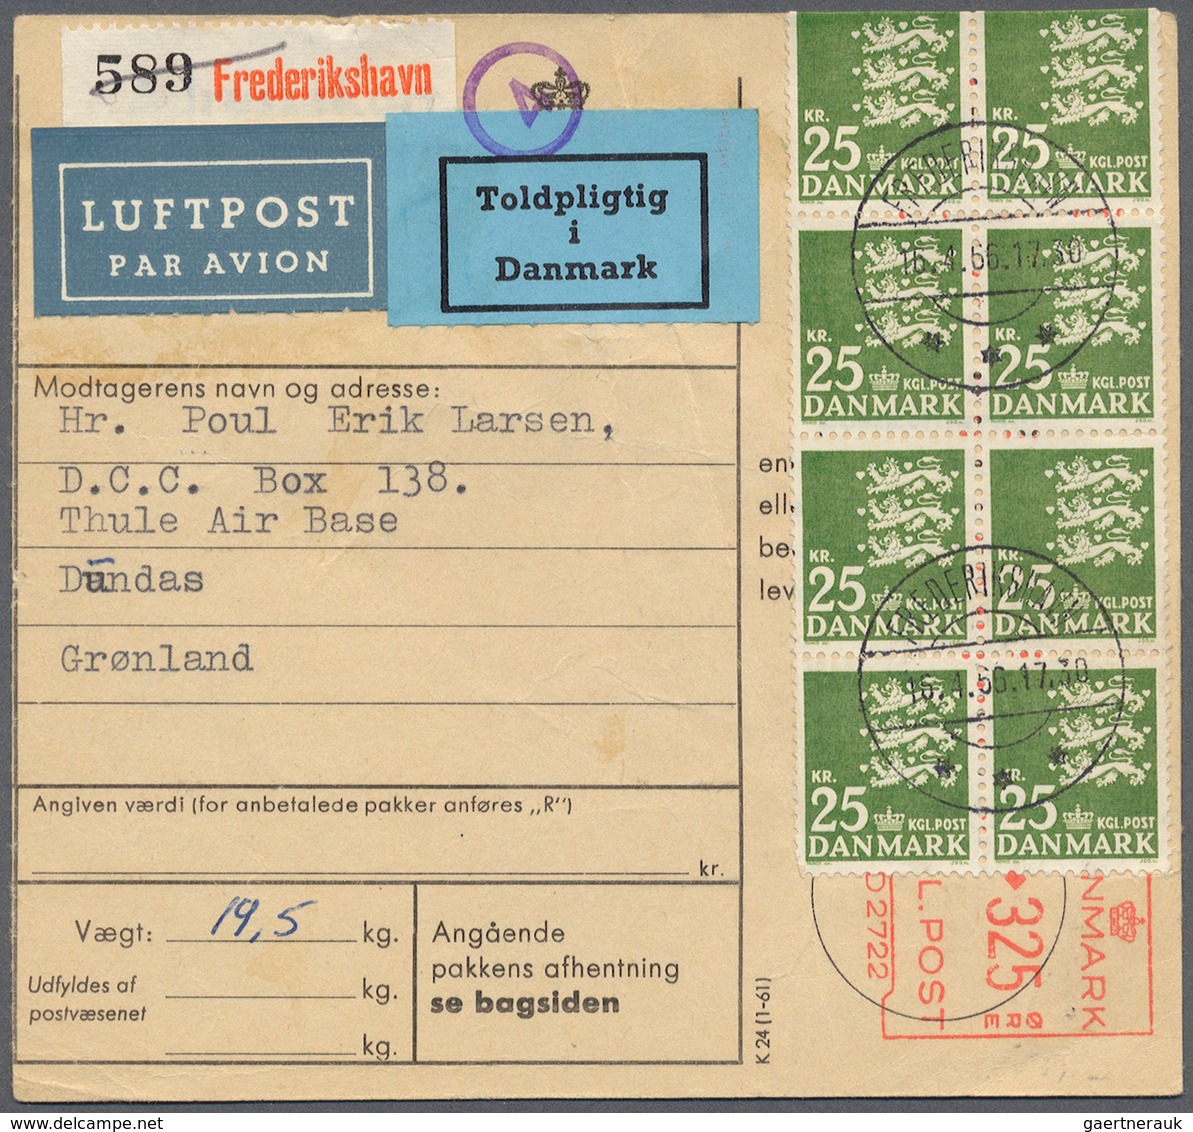 Dänemark: 1915 (ab), kleiner Posten von 68 Belegen, teils mit Besonderheiten wie Flugpost, Färöer un